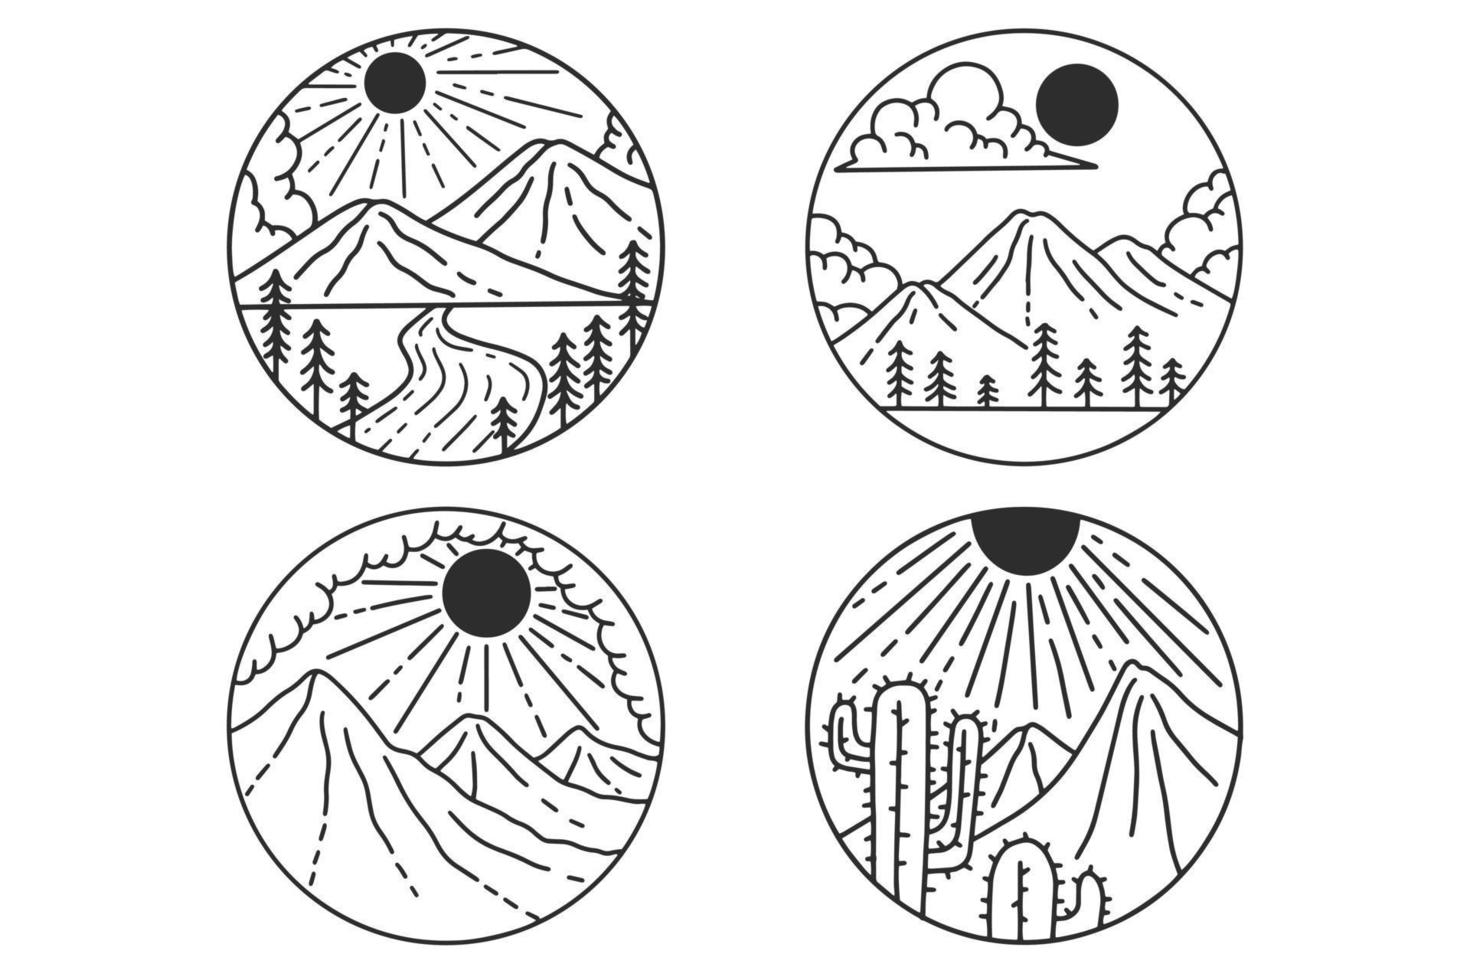 collezione badge avventura logo campeggio esploratore di montagna spedizioni disegnate a mano all'aperto vettore